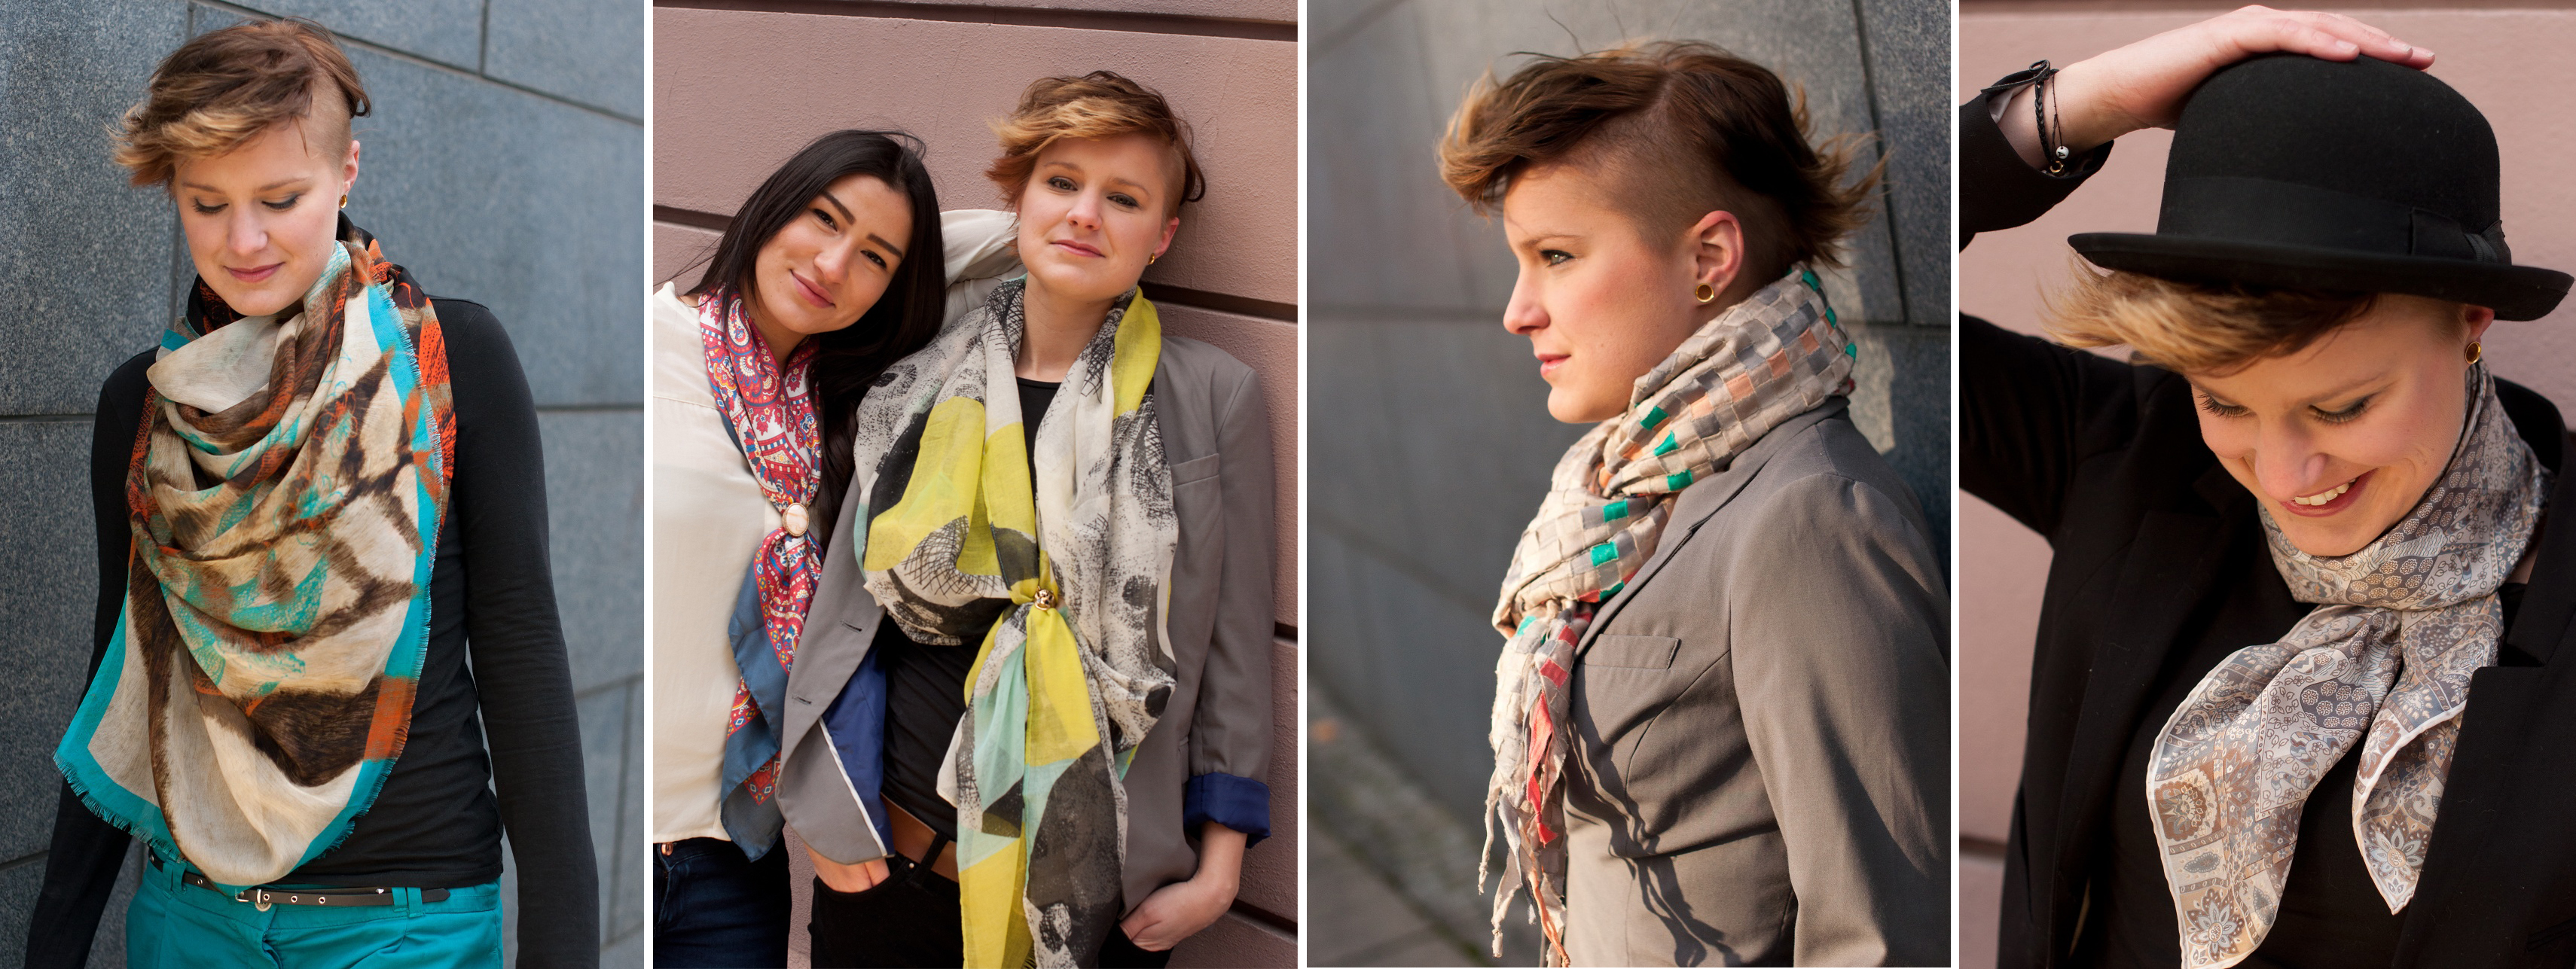 Варианты ношения шарфов для девочек подростков